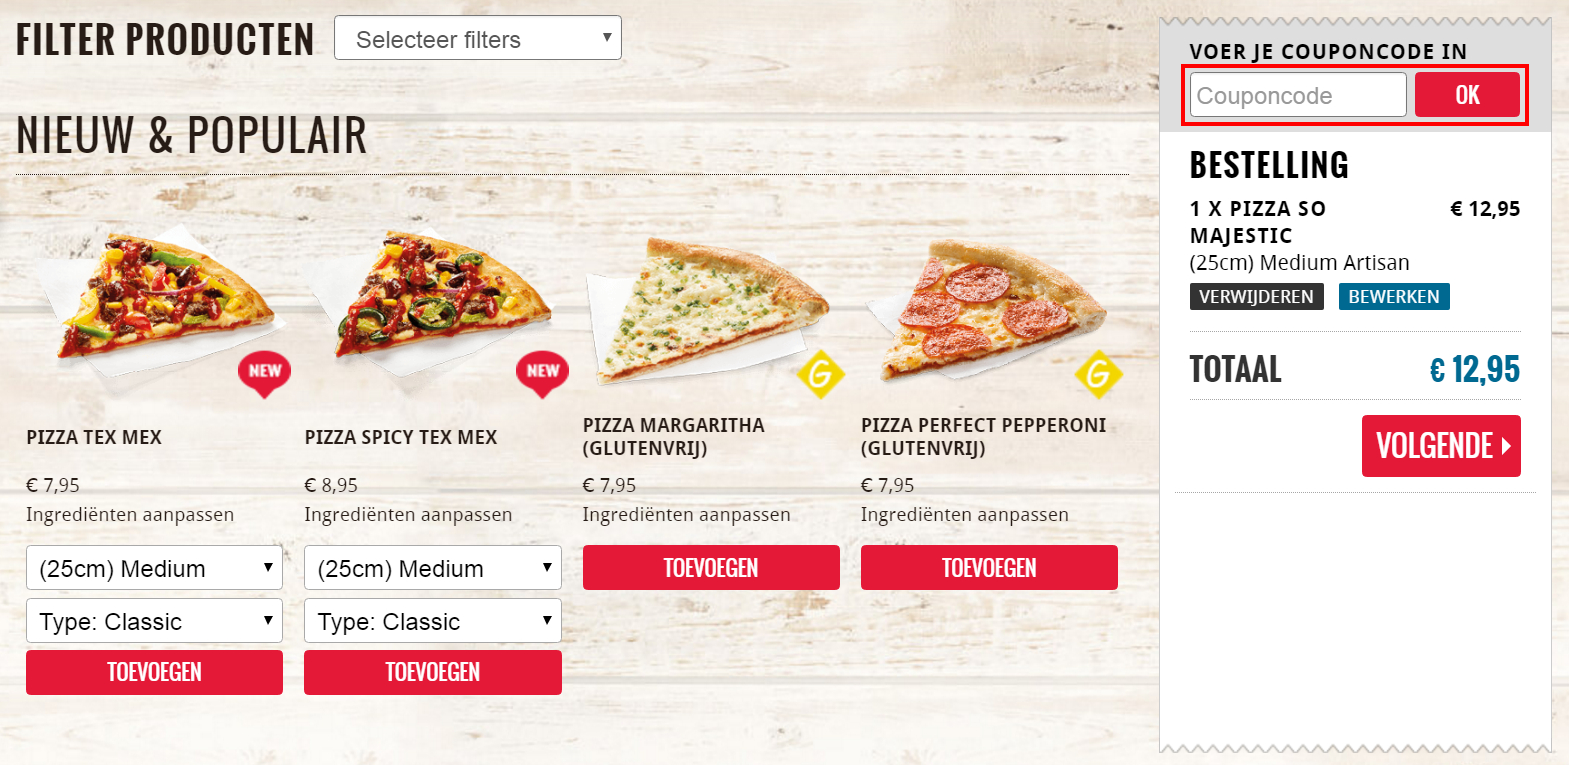 sla Behandeling Afstudeeralbum Domino's Pizza kortingscode: 50% korting in mei 2023